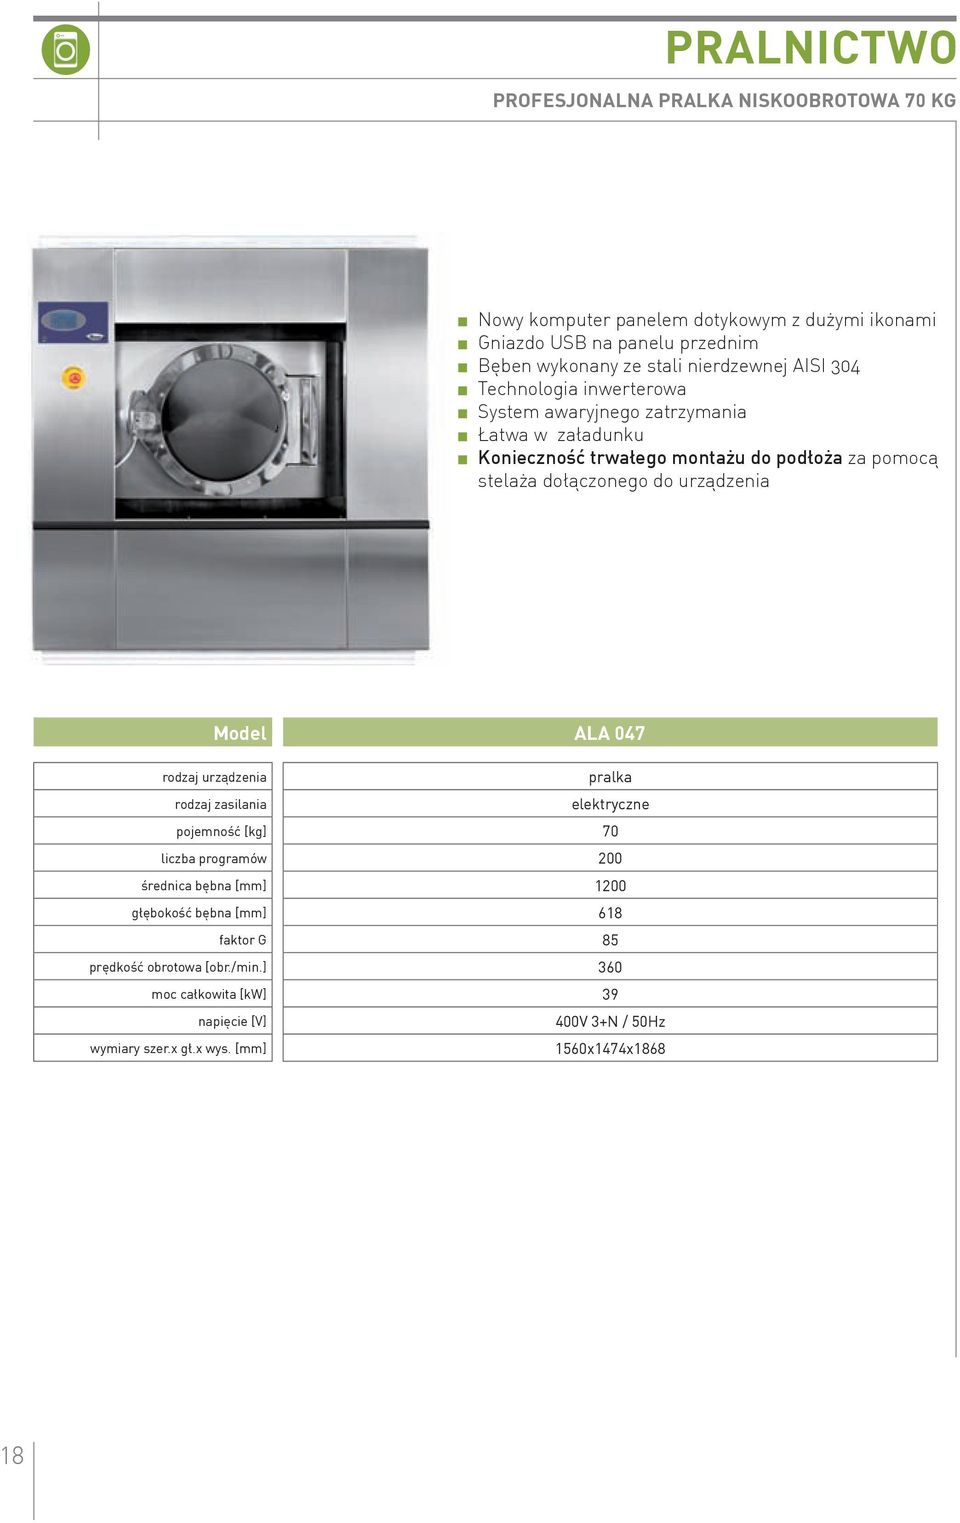 Model ALA 047 rodzaj urządzenia pralka rodzaj zasilania elektryczne pojemność [kg] 70 liczba programów 200 średnica bębna [mm] 1200 głębokość bębna